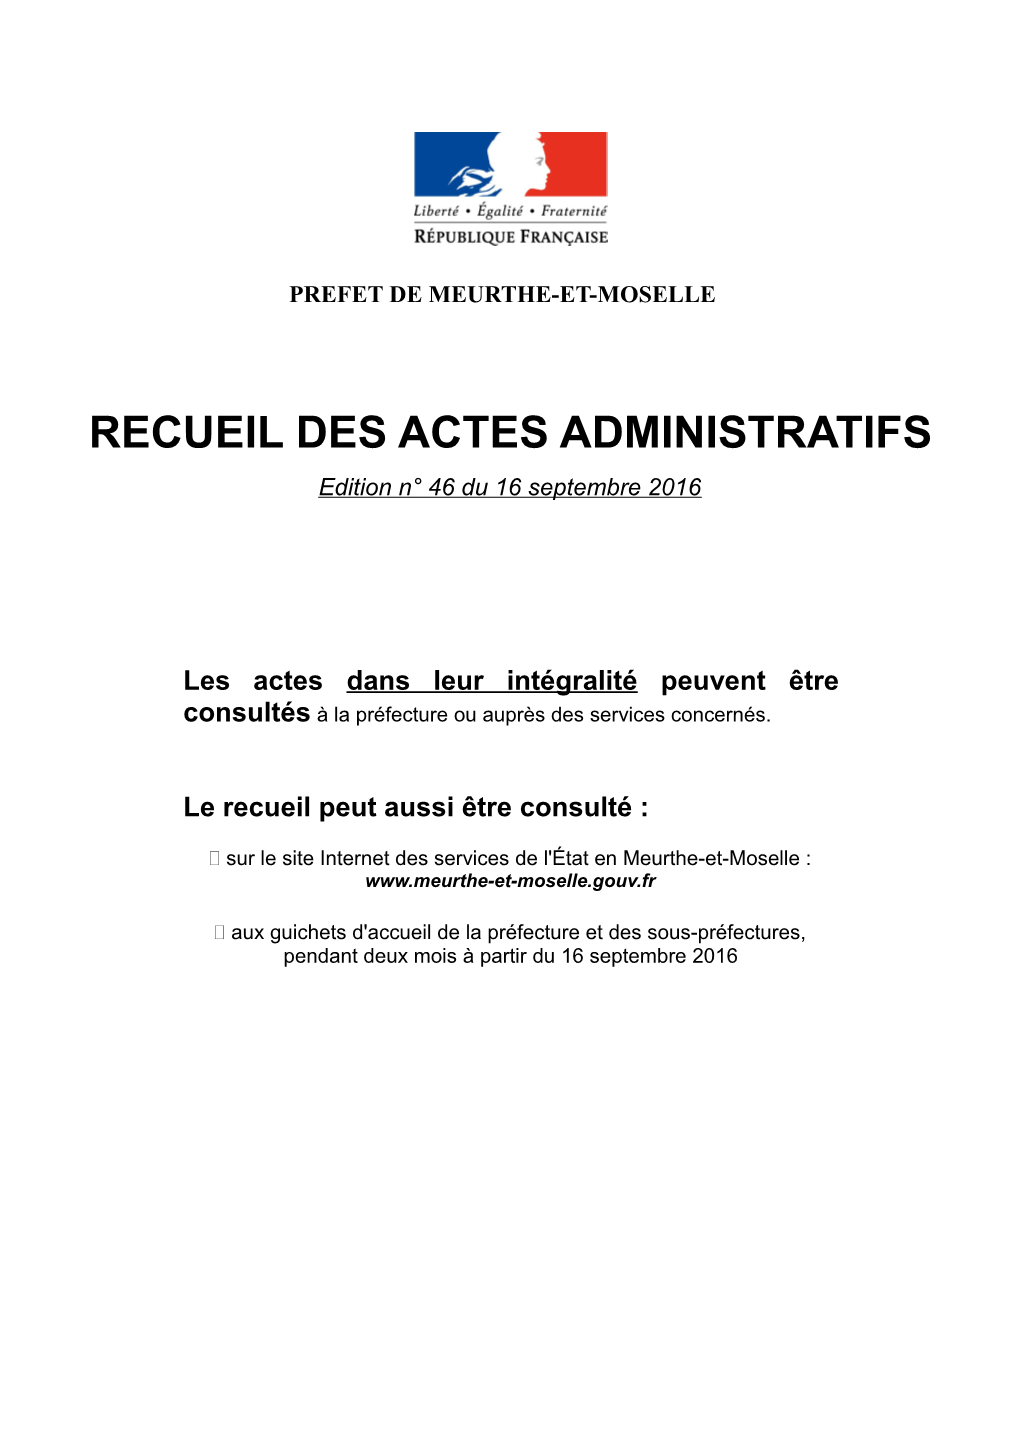 RECUEIL DES ACTES ADMINISTRATIFS Edition N° 46 Du 16 Septembre 2016